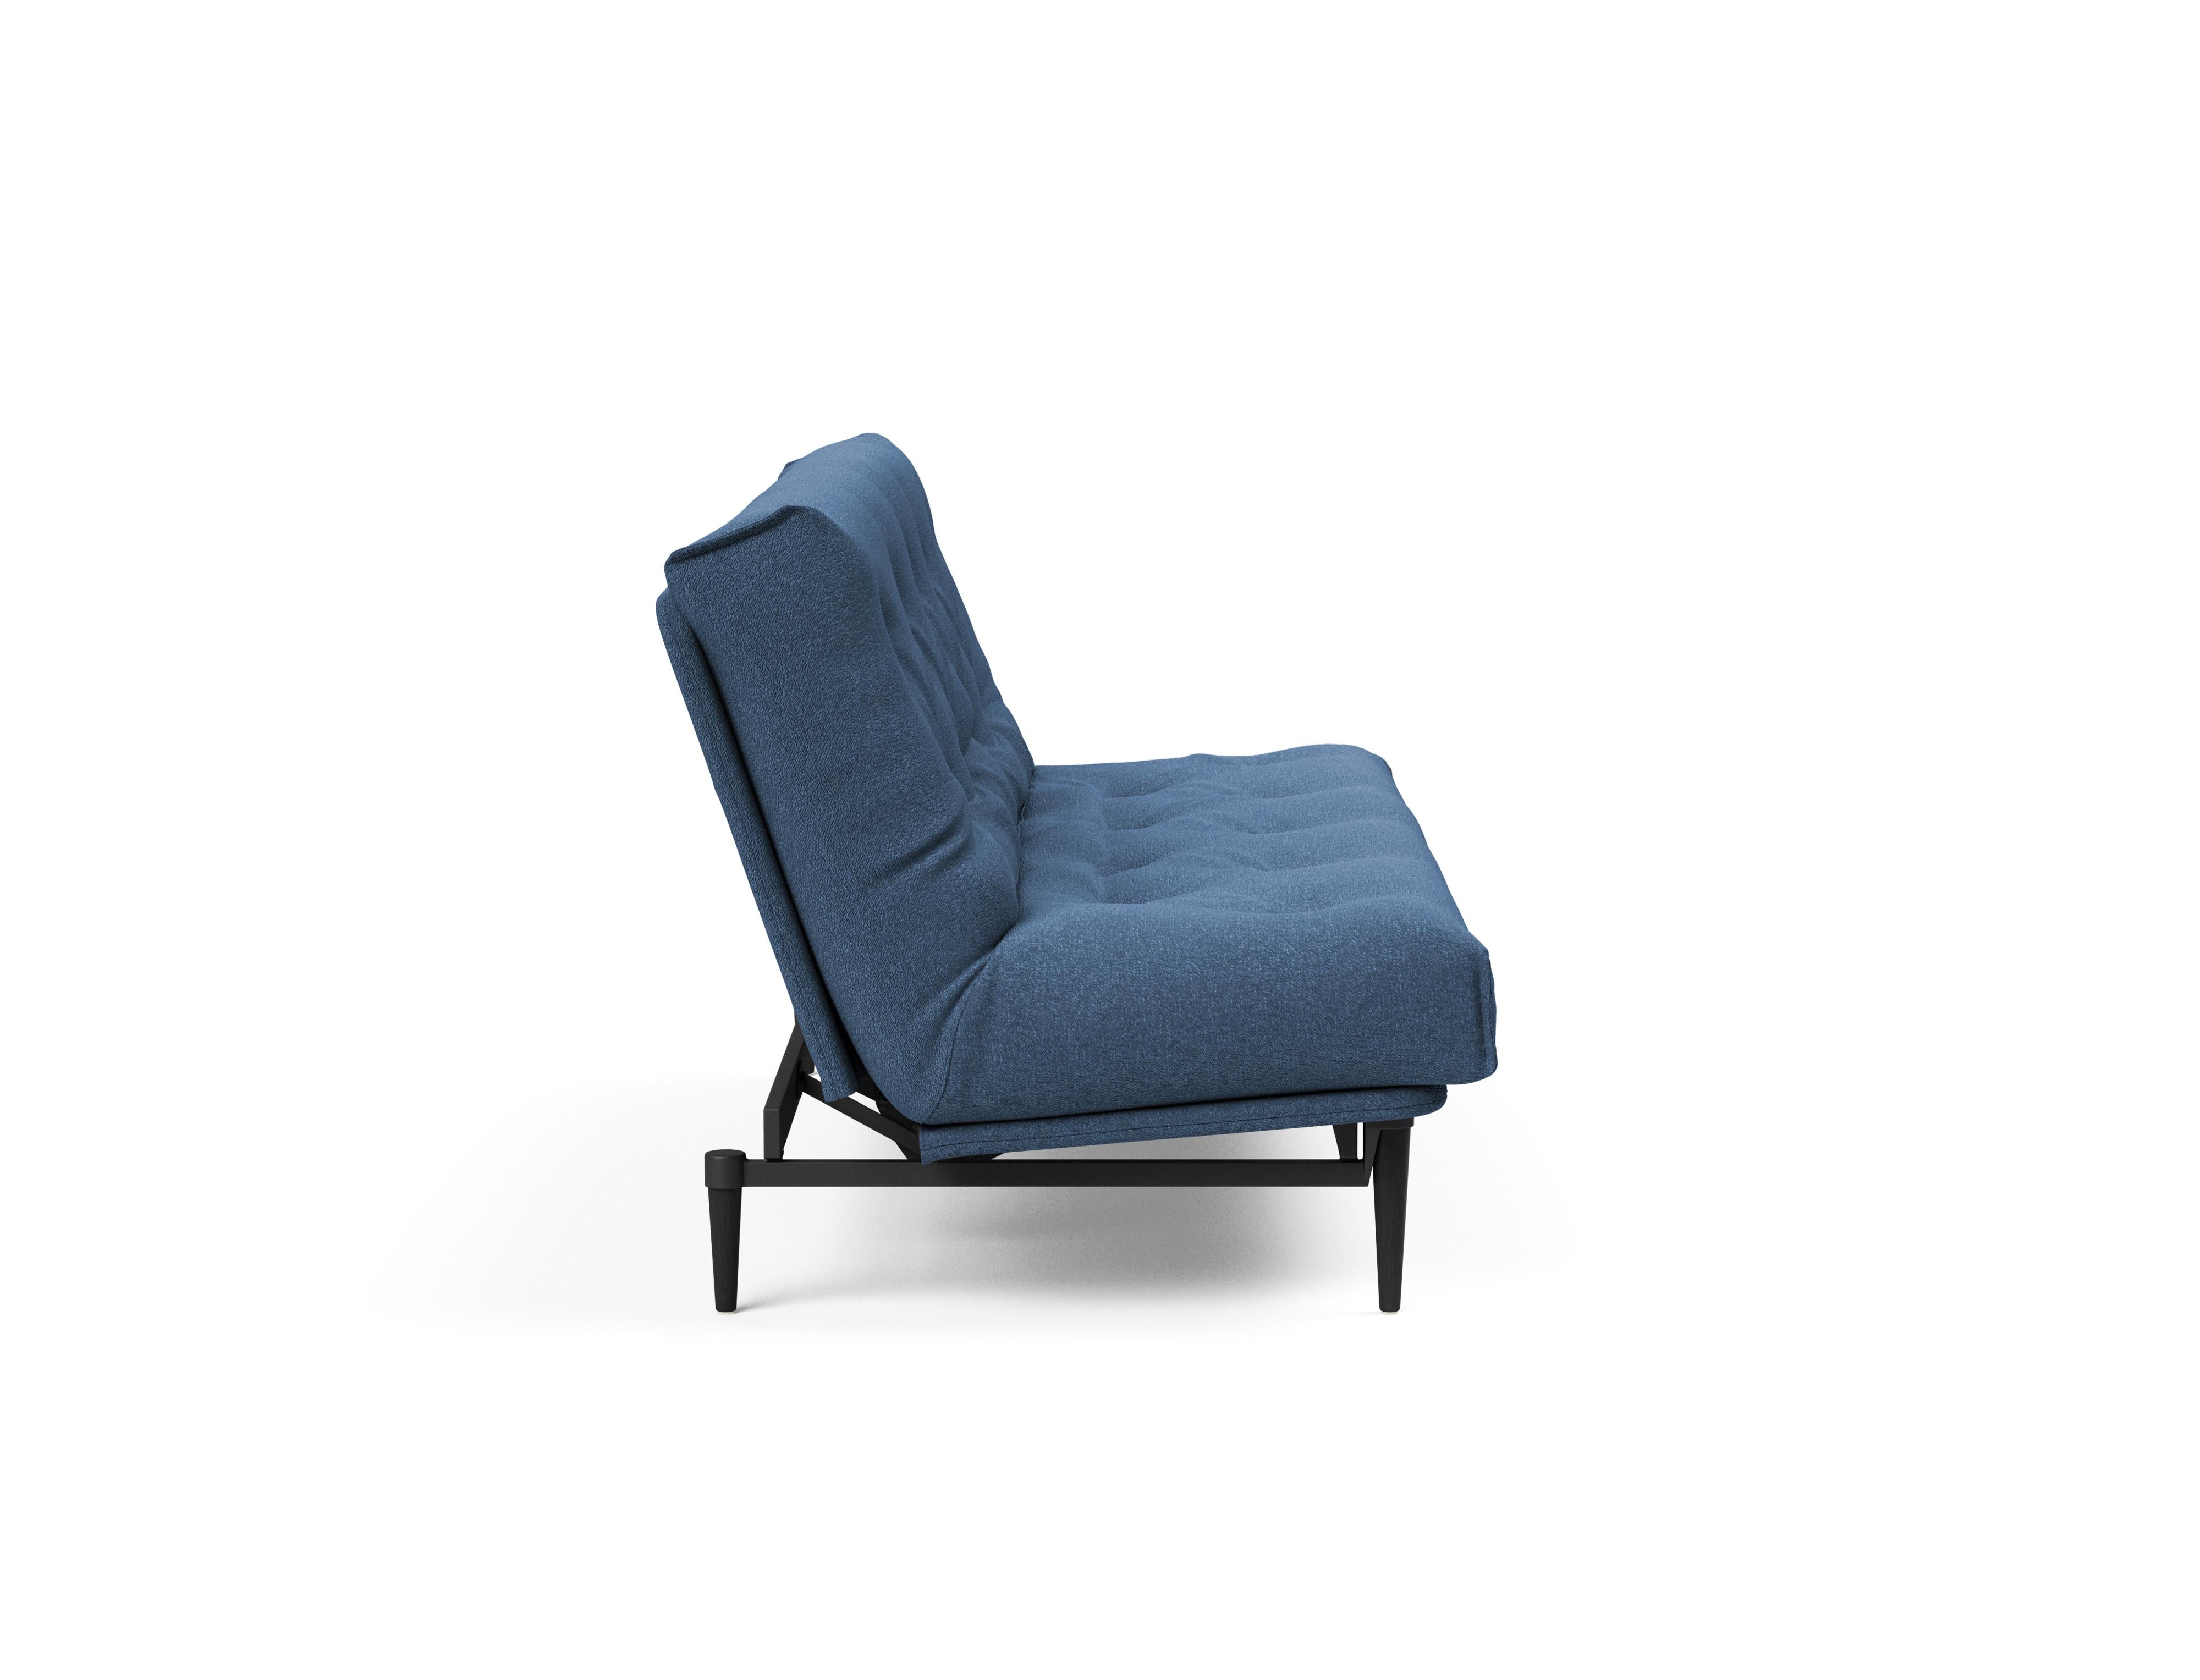 Colpus Black Bettsofa Nordic in Blau 537 präsentiert im Onlineshop von KAQTU Design AG. Bettsofa ist von Innovation Living